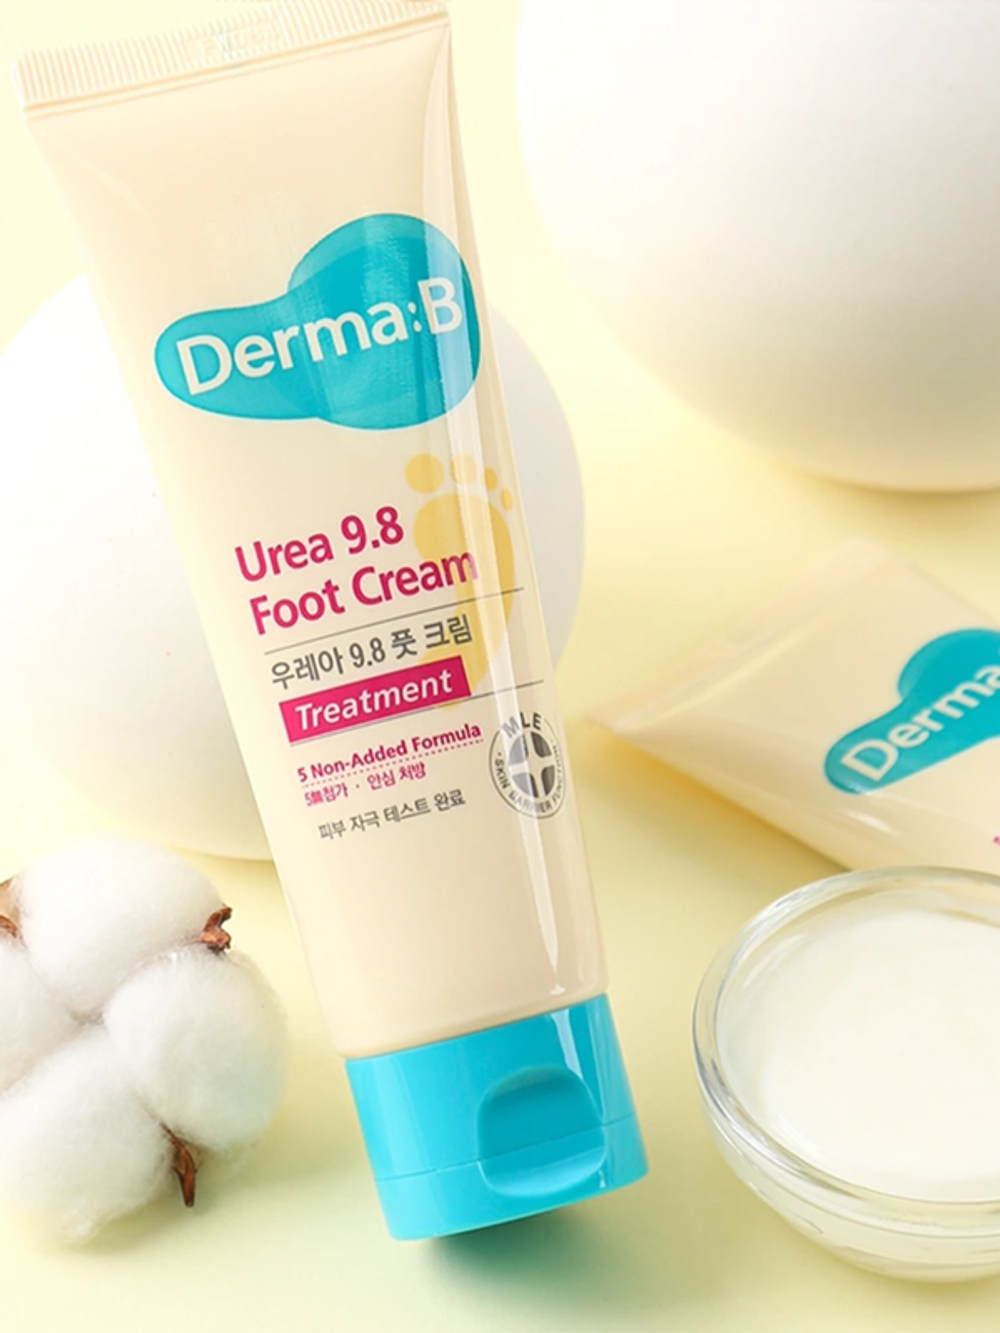 Derma:B Urea 9.8 Foot Cream увлажняющий крем для ног с мочевиной